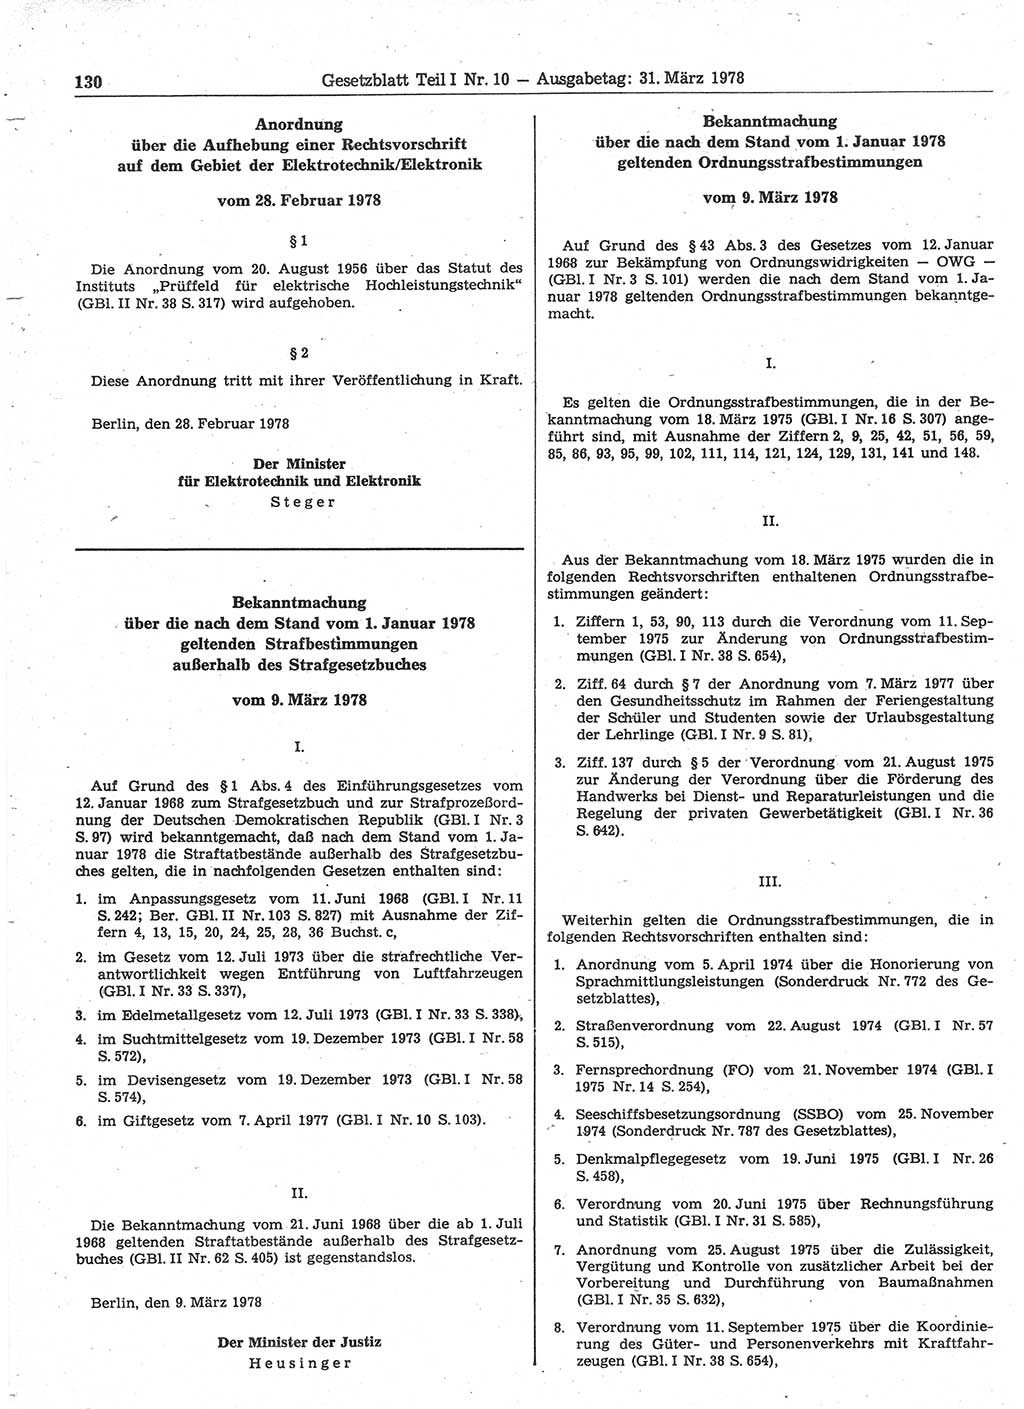 Gesetzblatt (GBl.) der Deutschen Demokratischen Republik (DDR) Teil Ⅰ 1978, Seite 130 (GBl. DDR Ⅰ 1978, S. 130)